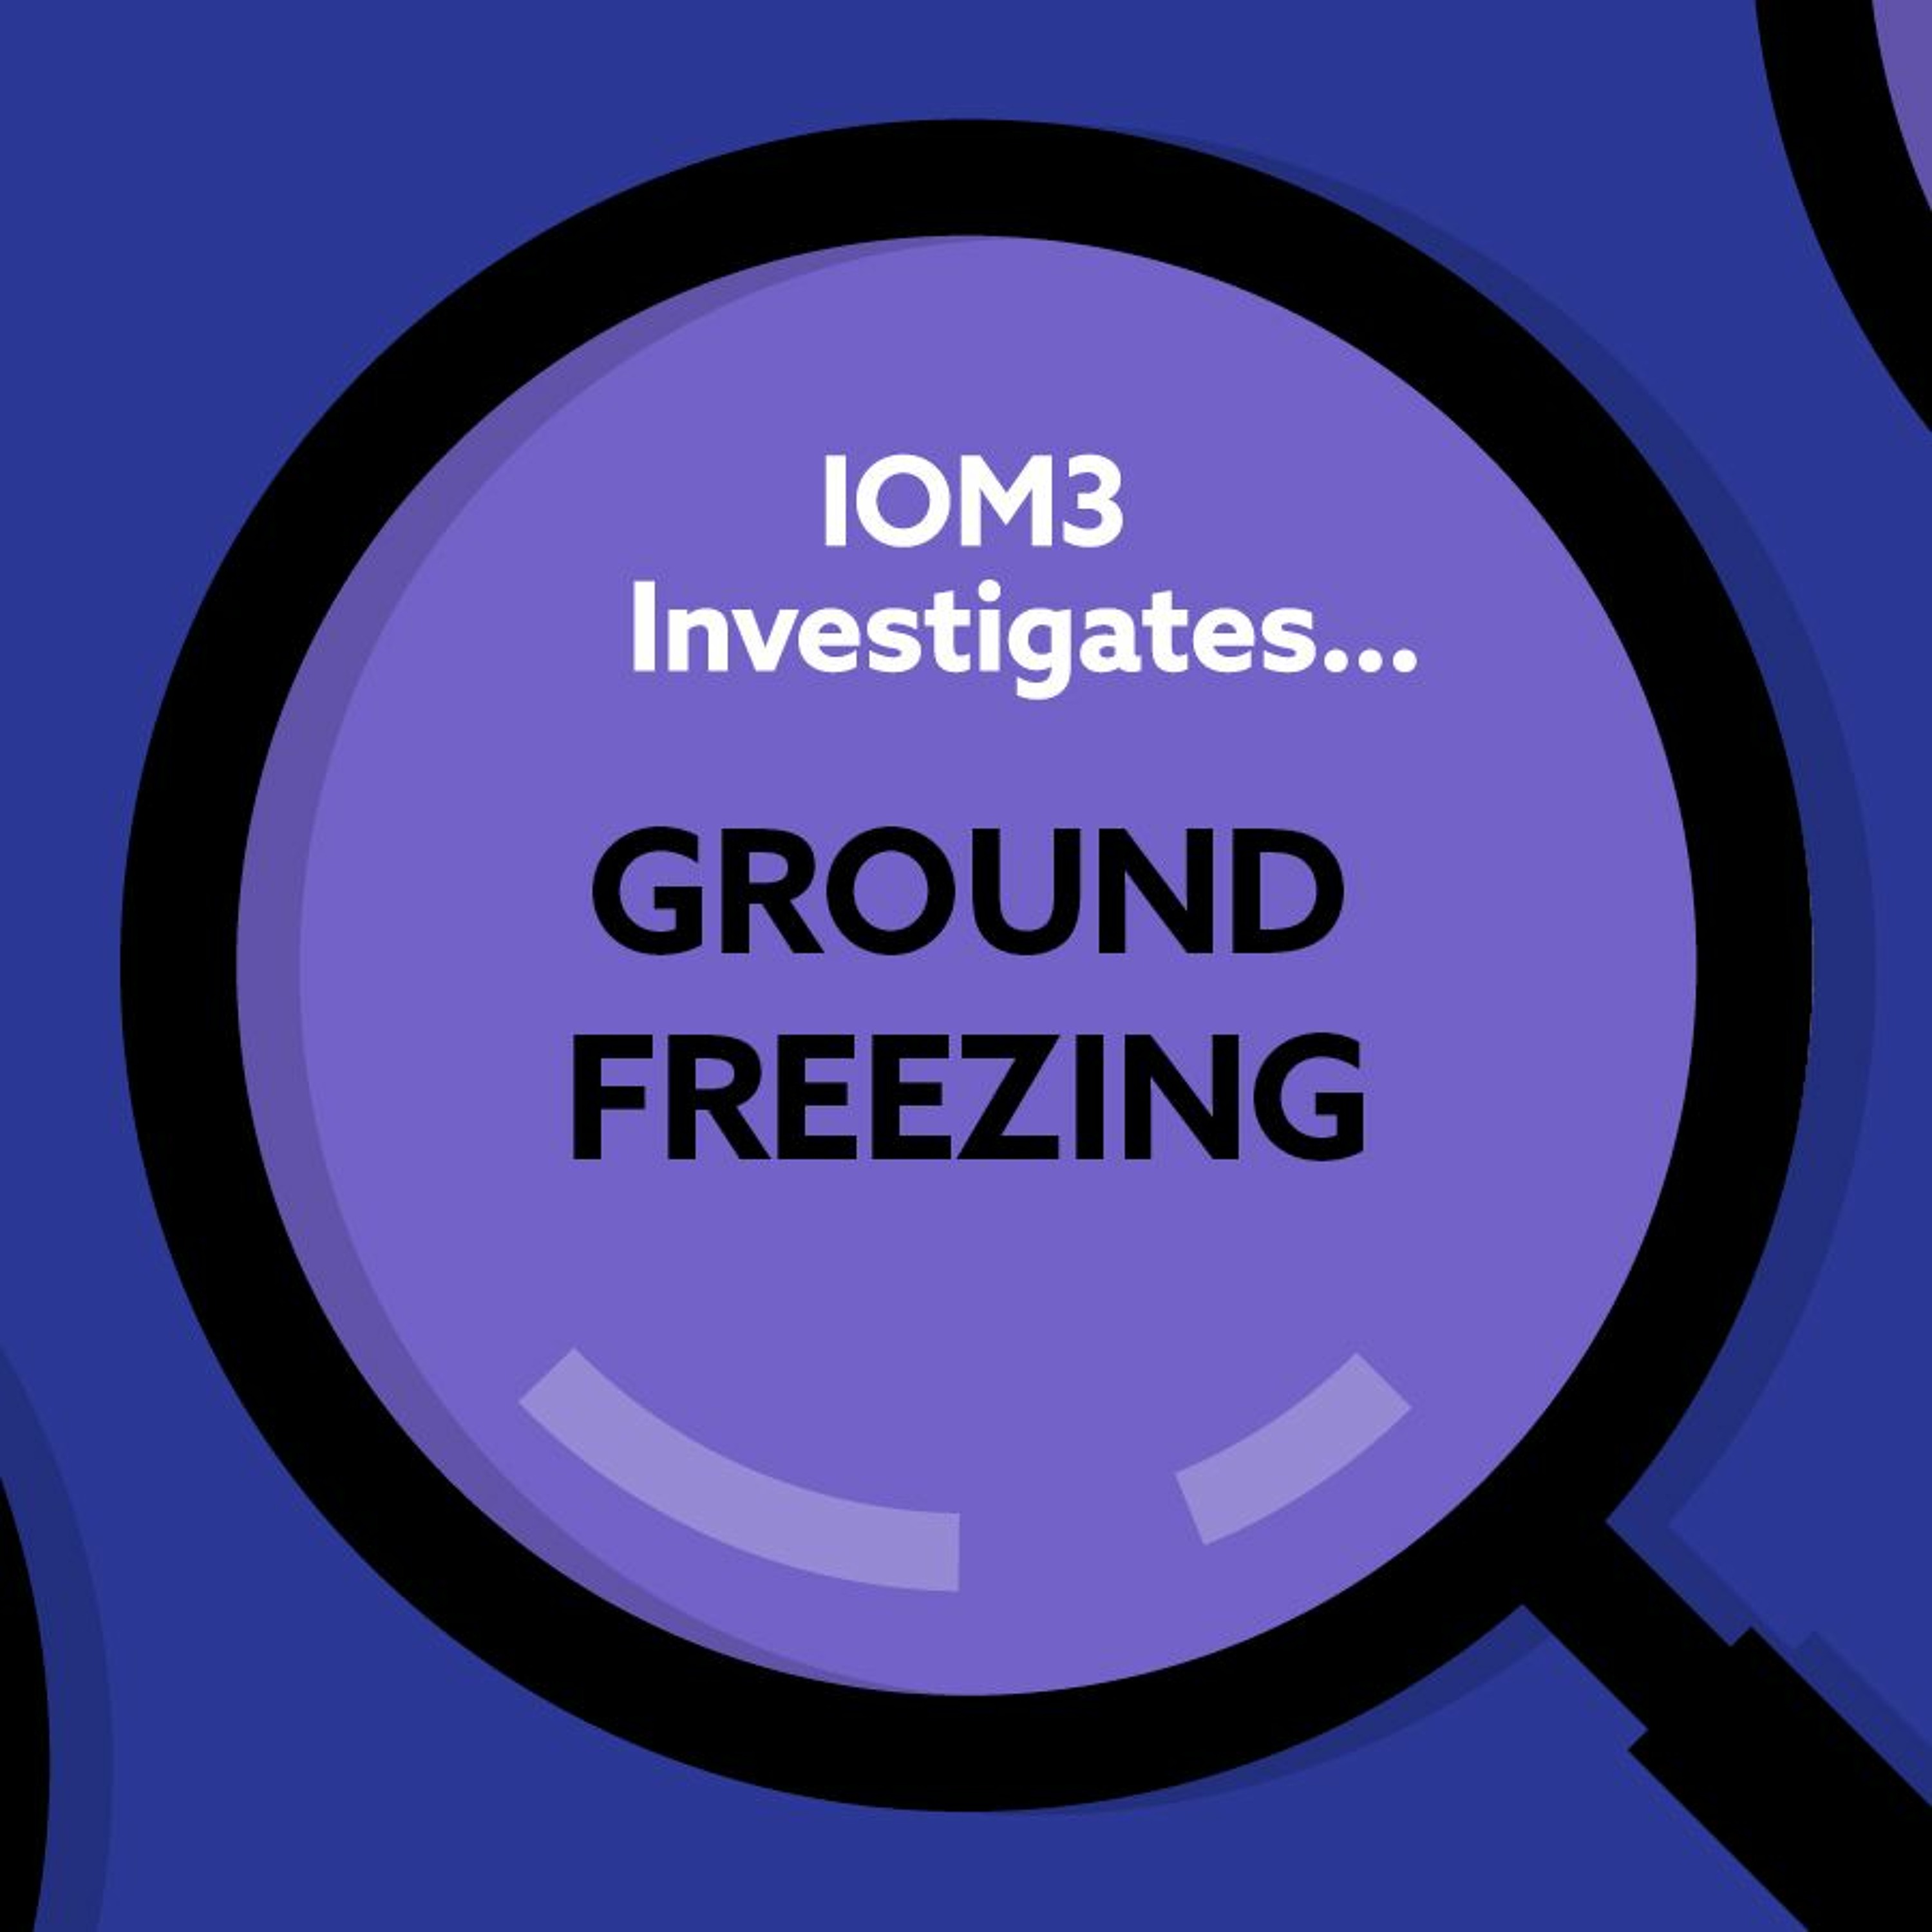 IOM3 Investigates... Ground freezing